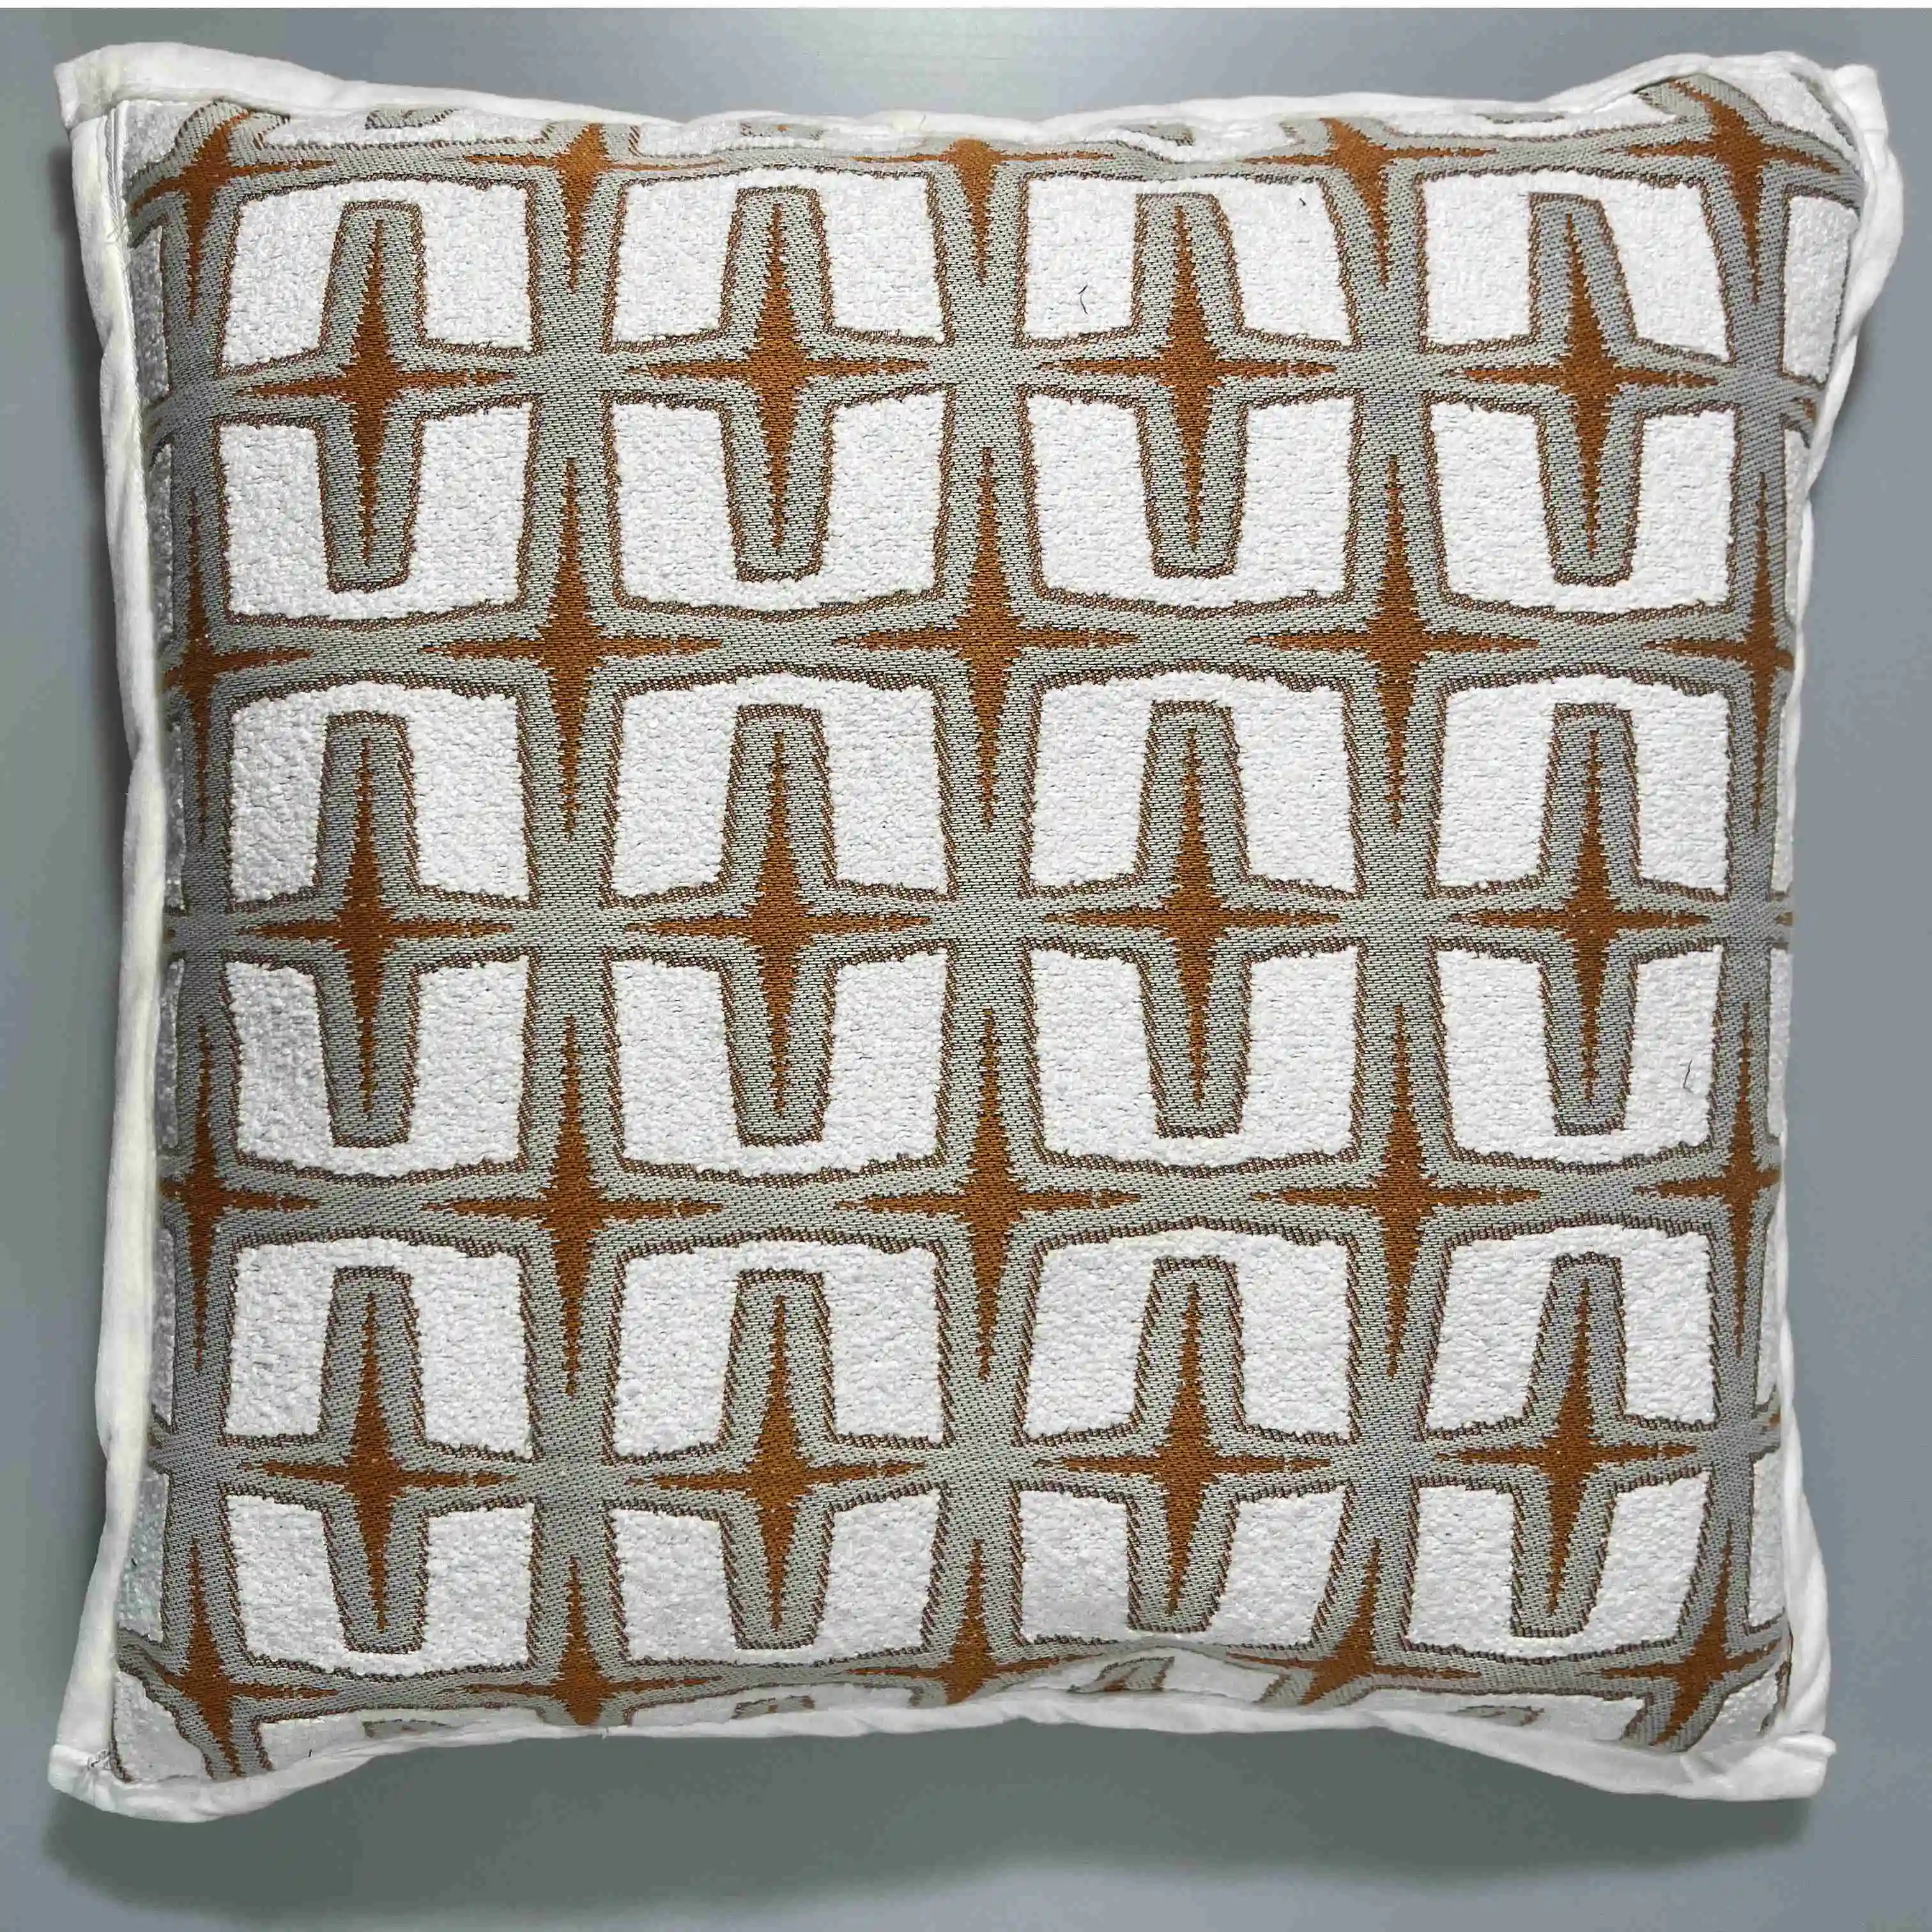 Vente en gros de taies d'oreiller décoratives de canapés personnalisées housses de coussins exquises coussins de siège et oreiller décoration intérieure taie d'oreiller de luxe